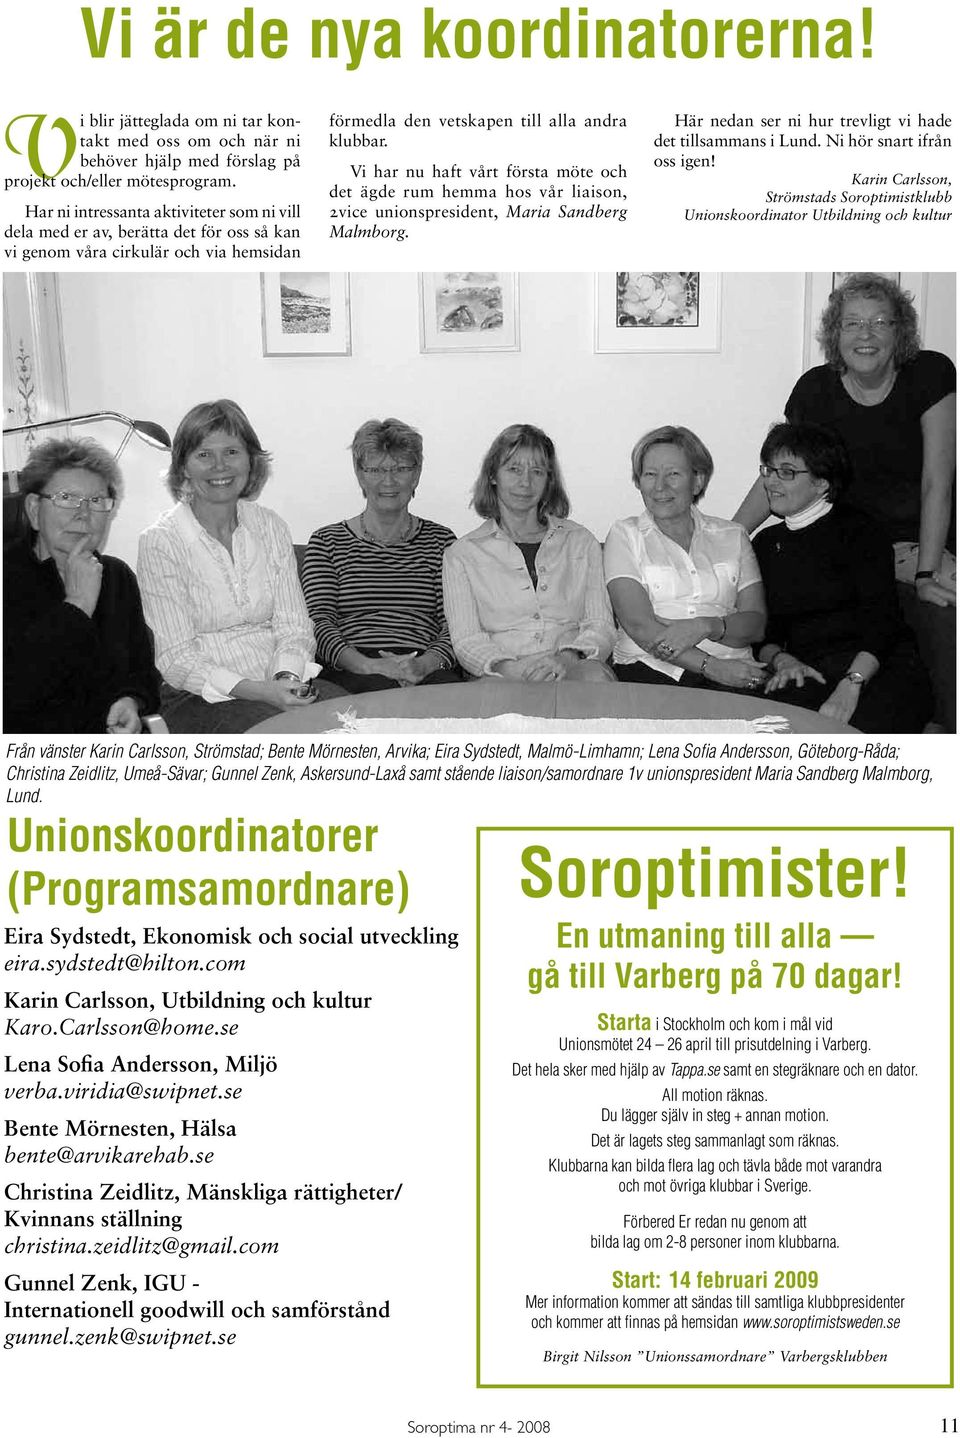 Vi har nu haft vårt första möte och det ägde rum hemma hos vår liaison, 2vice unionspresident, Maria Sandberg Malmborg. Här nedan ser ni hur trevligt vi hade det tillsammans i Lund.